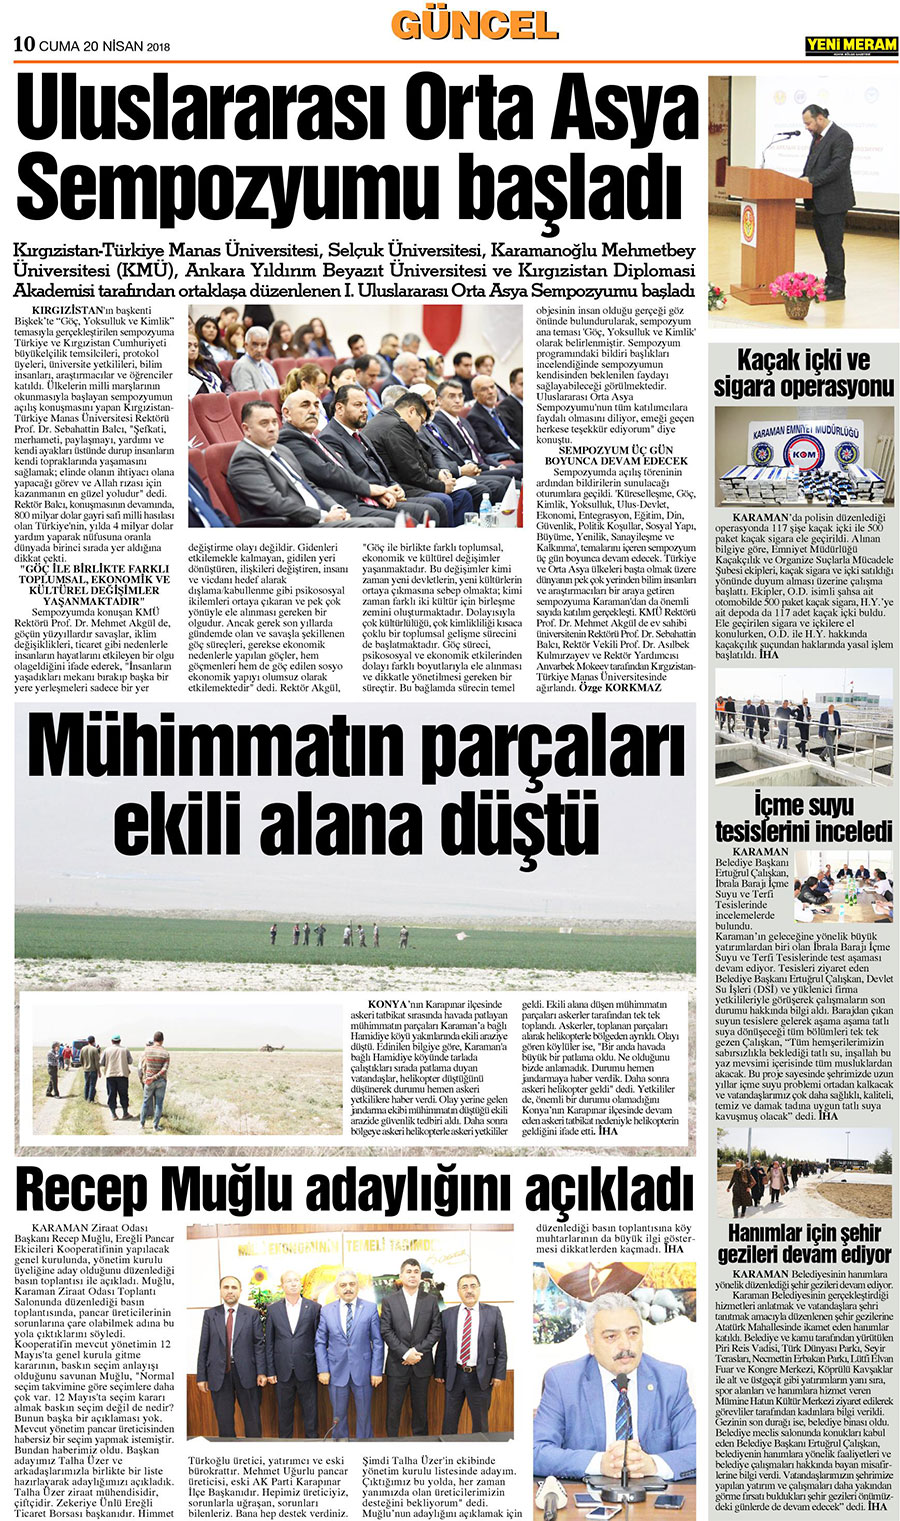 20 Nisan 2018 Yeni Meram Gazetesi